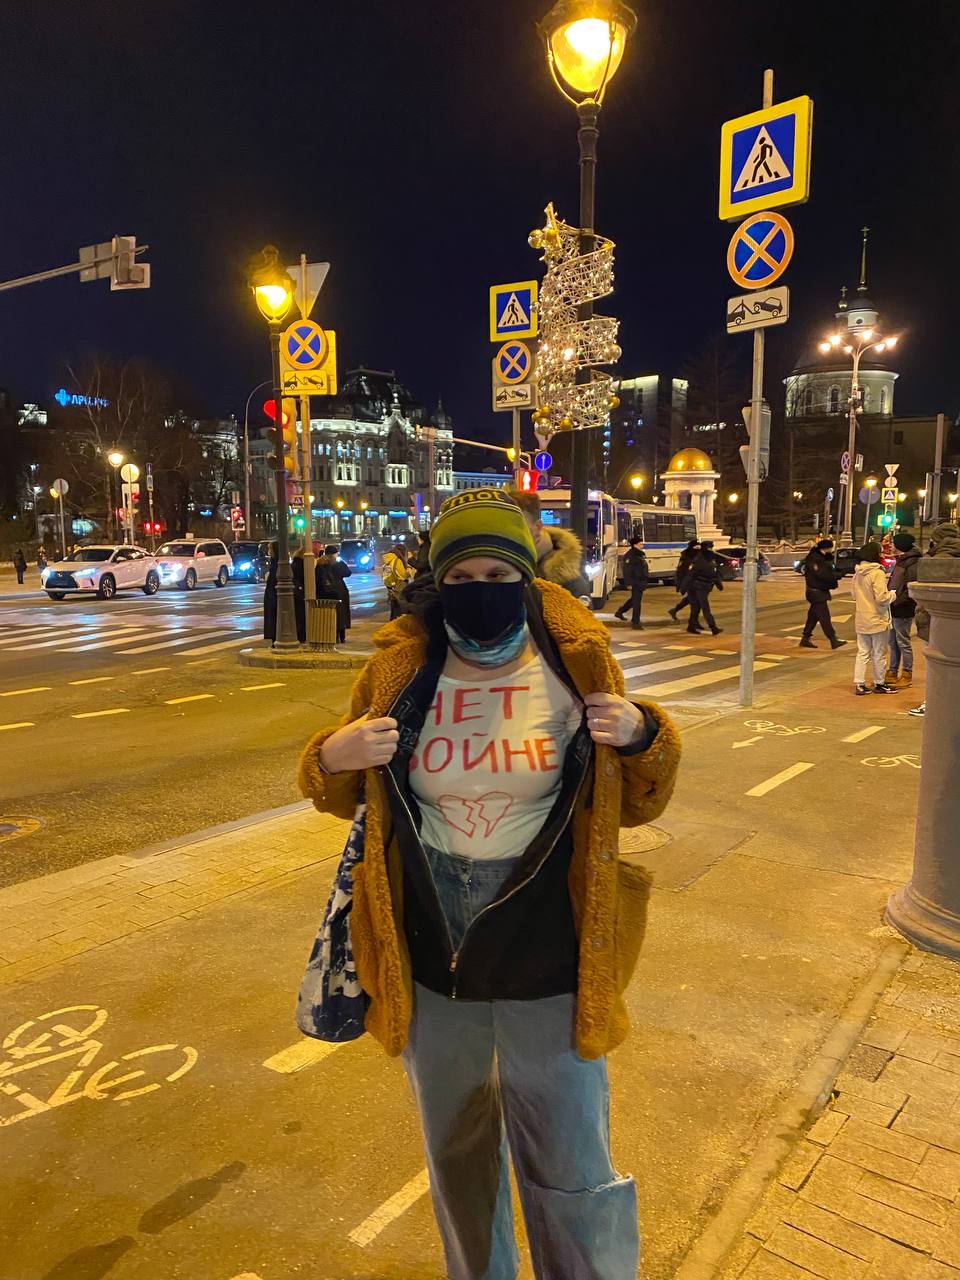 יאנה פספלוב בצעדת המחאה במוסקבה. אסור לשאת שלטים, אז היא כתבה &quot;לא למלחמה&quot; על החולצה (צילום: אלבום פרטי)